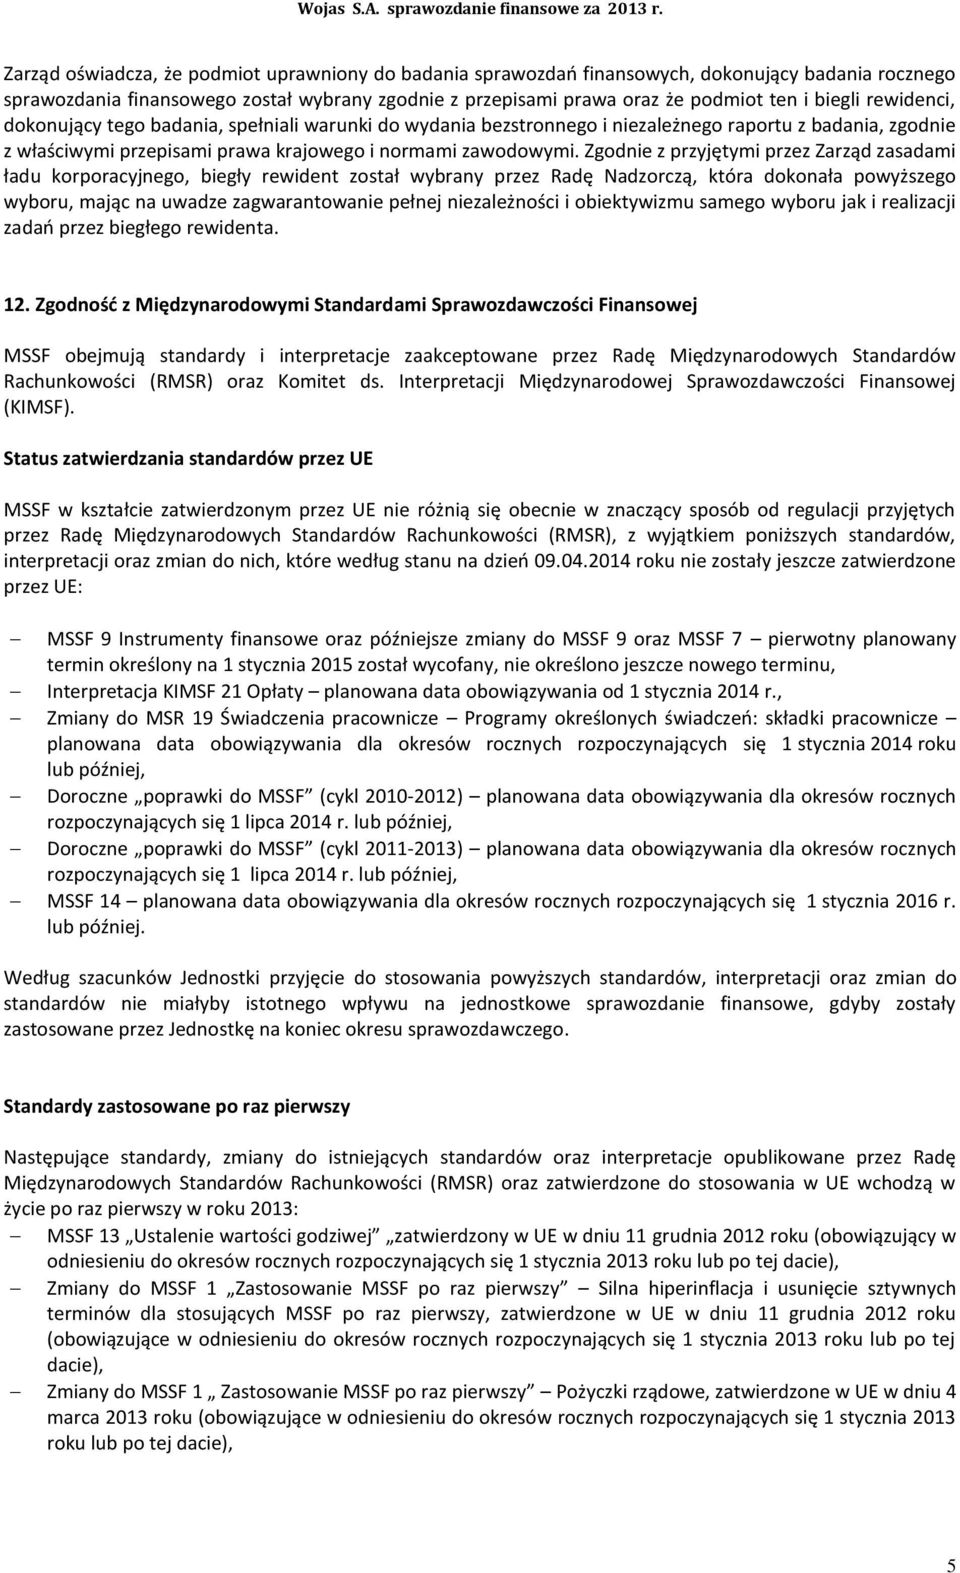 WOJAS S.A. Sprawozdanie finansowe za okres 2013 roku. Nowy Targ, dnia 09  kwietnia 2014 roku - PDF Darmowe pobieranie